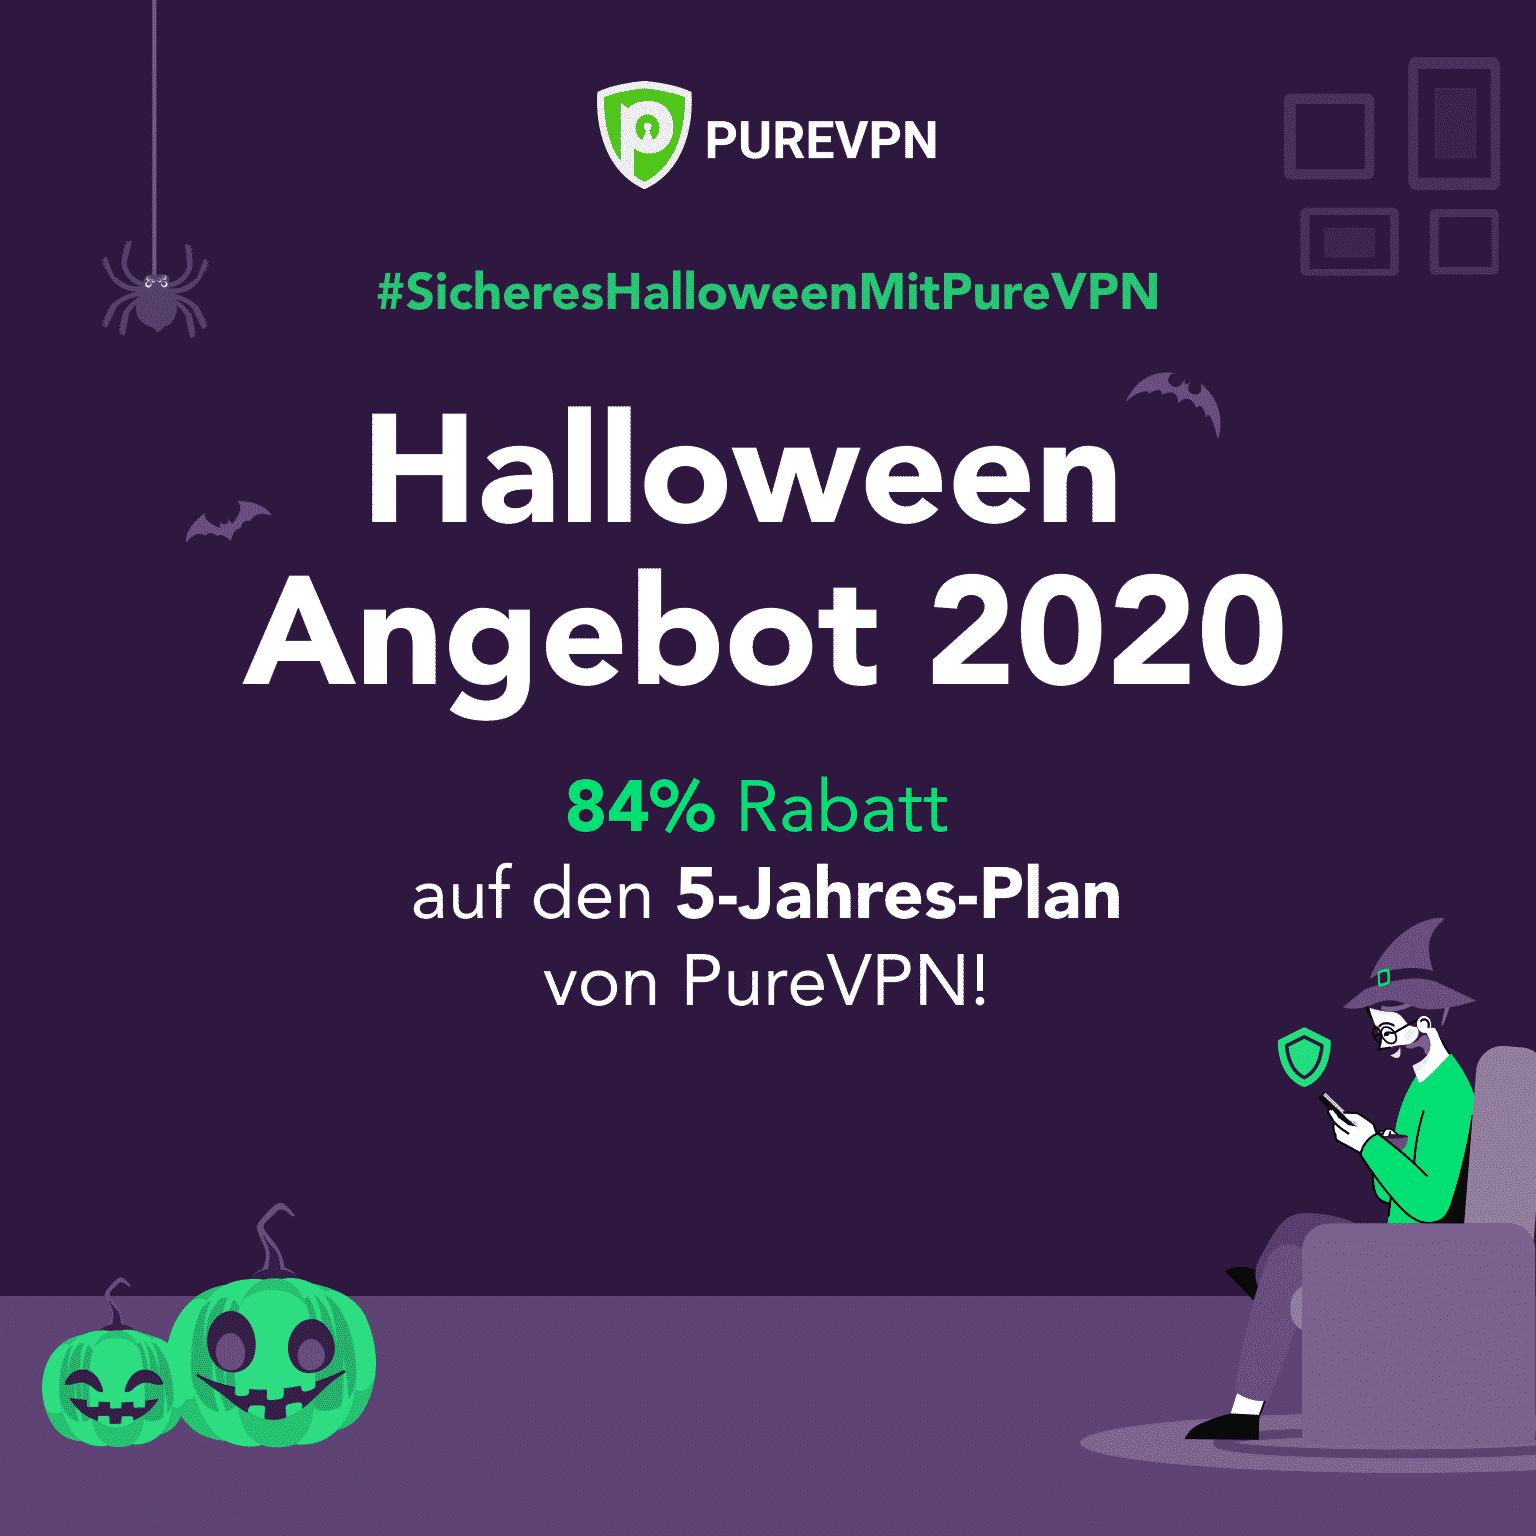 Halloween Angebot: 84% Rabatt auf den 5-Jahres-Plan von PureVPN für Windows